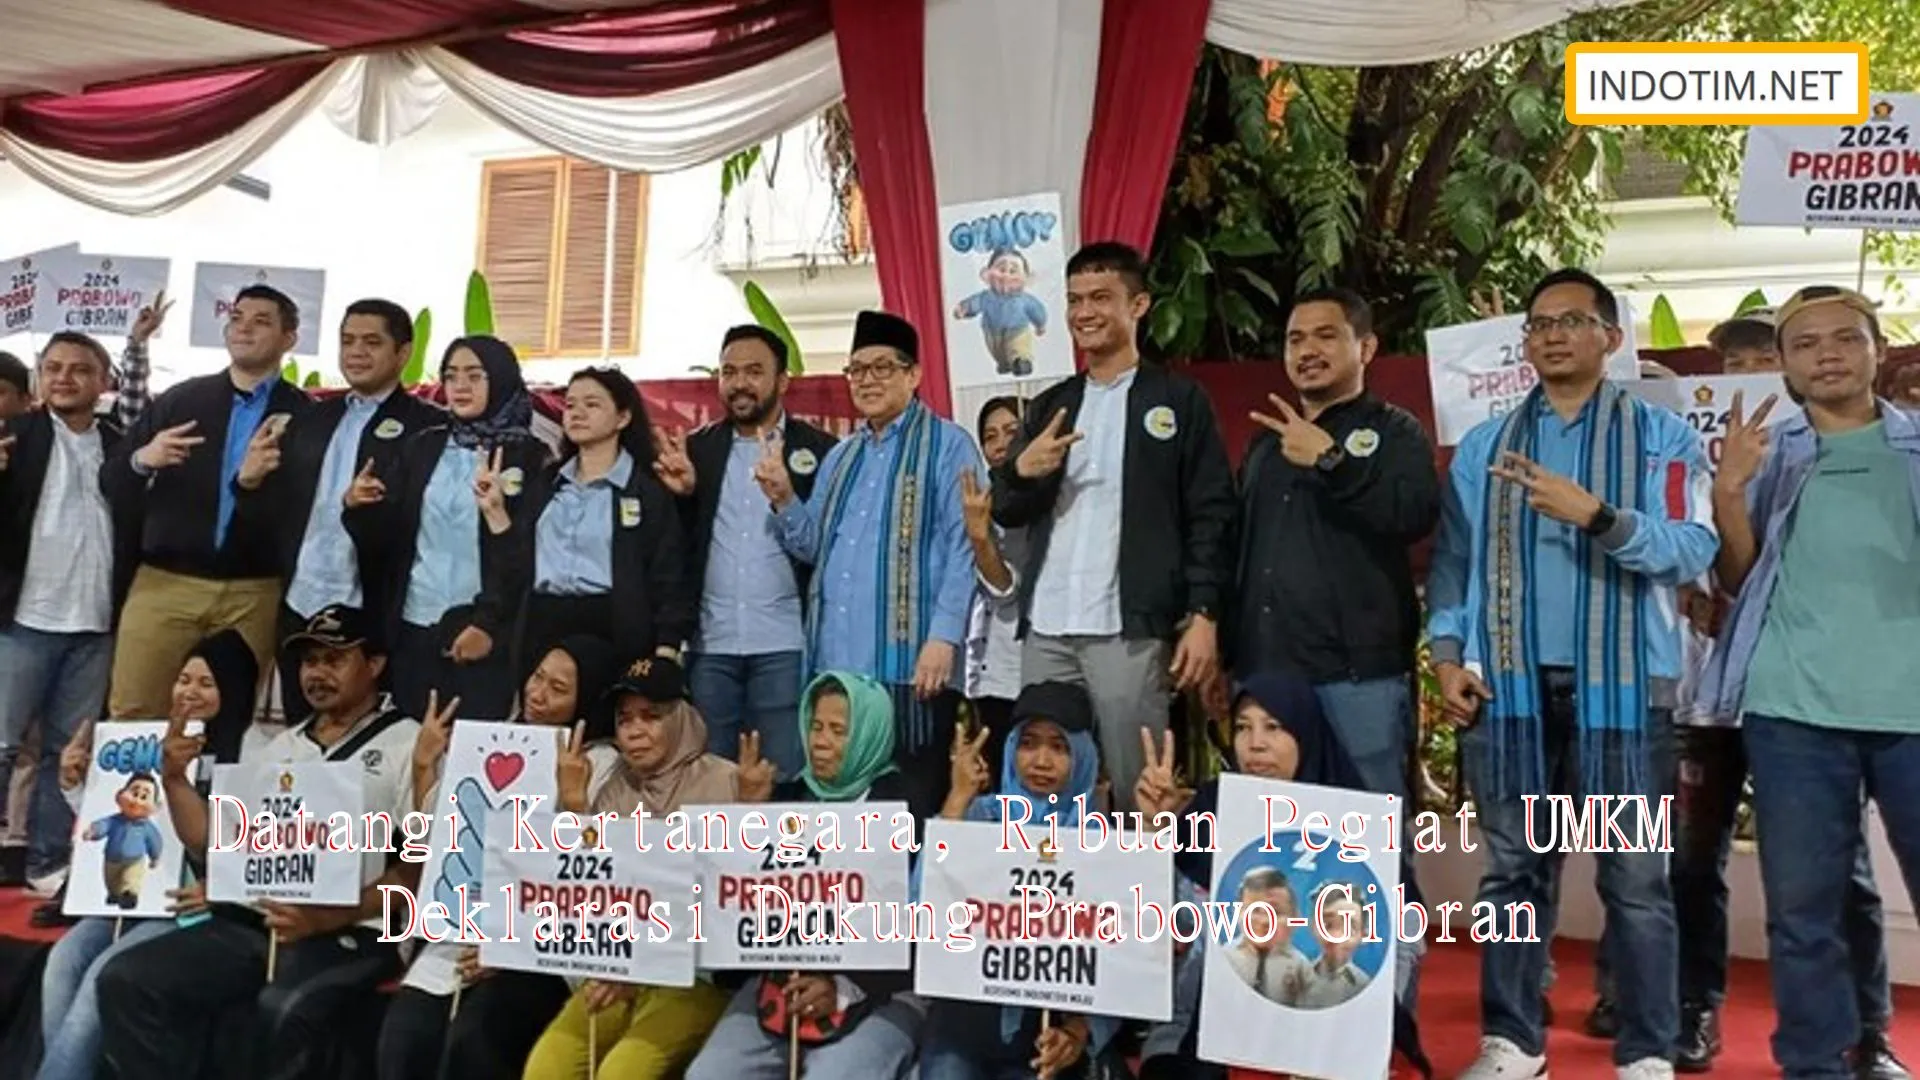 Datangi Kertanegara, Ribuan Pegiat UMKM Deklarasi Dukung Prabowo-Gibran